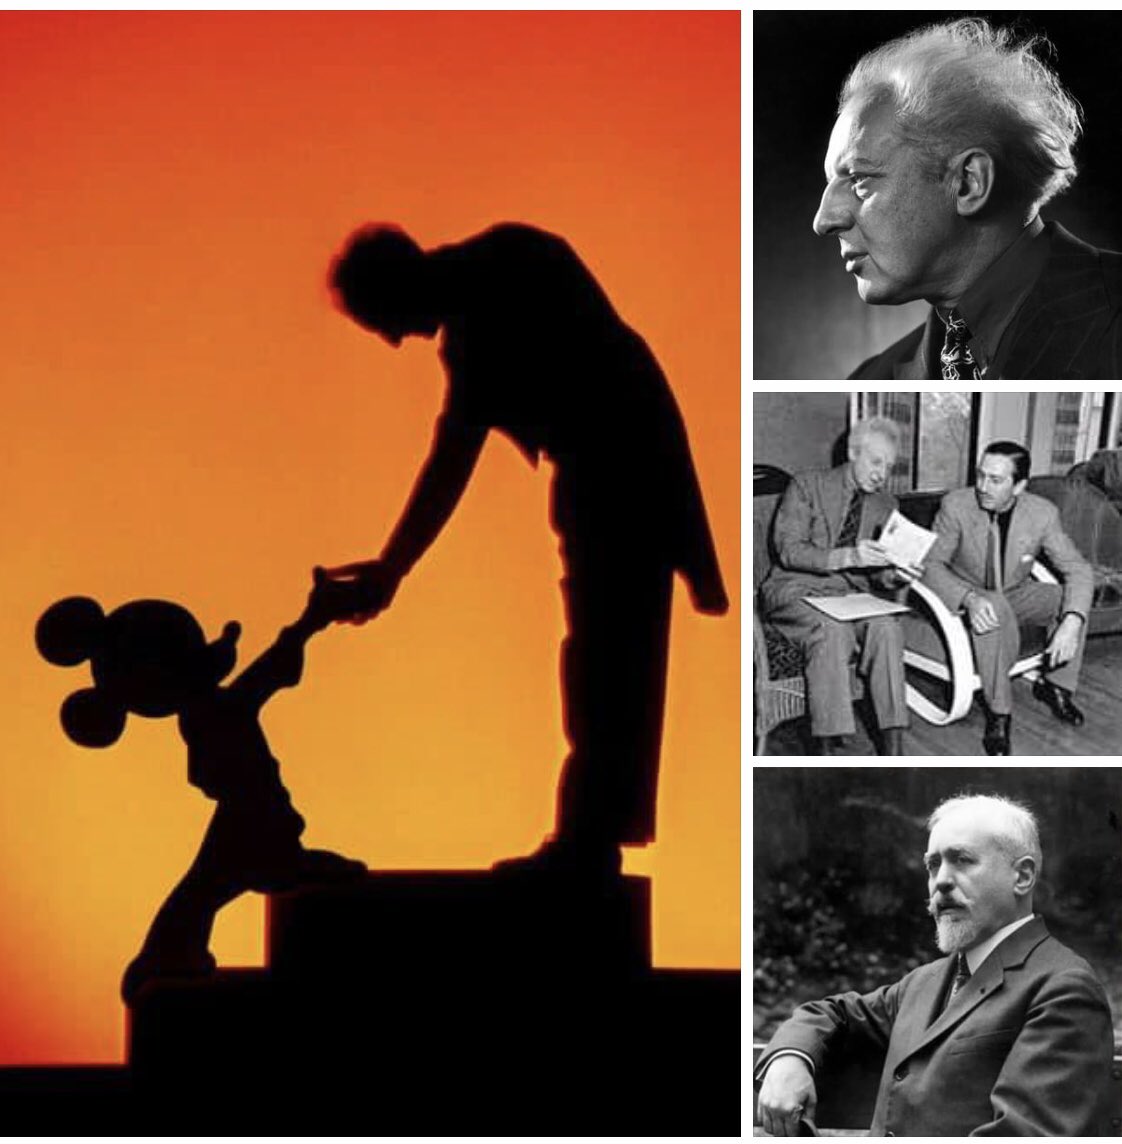 Aux apprentis sorciers qui encombrent notre actualité, je préfère mille fois celui de Paul Dukas immortalisé dans Fantasia, ce pas de deux cinématographique, fruit de l’imagination créatrice de Walt Disney et de Leopold Stokowski, lequel naquit il y a 142 ans.